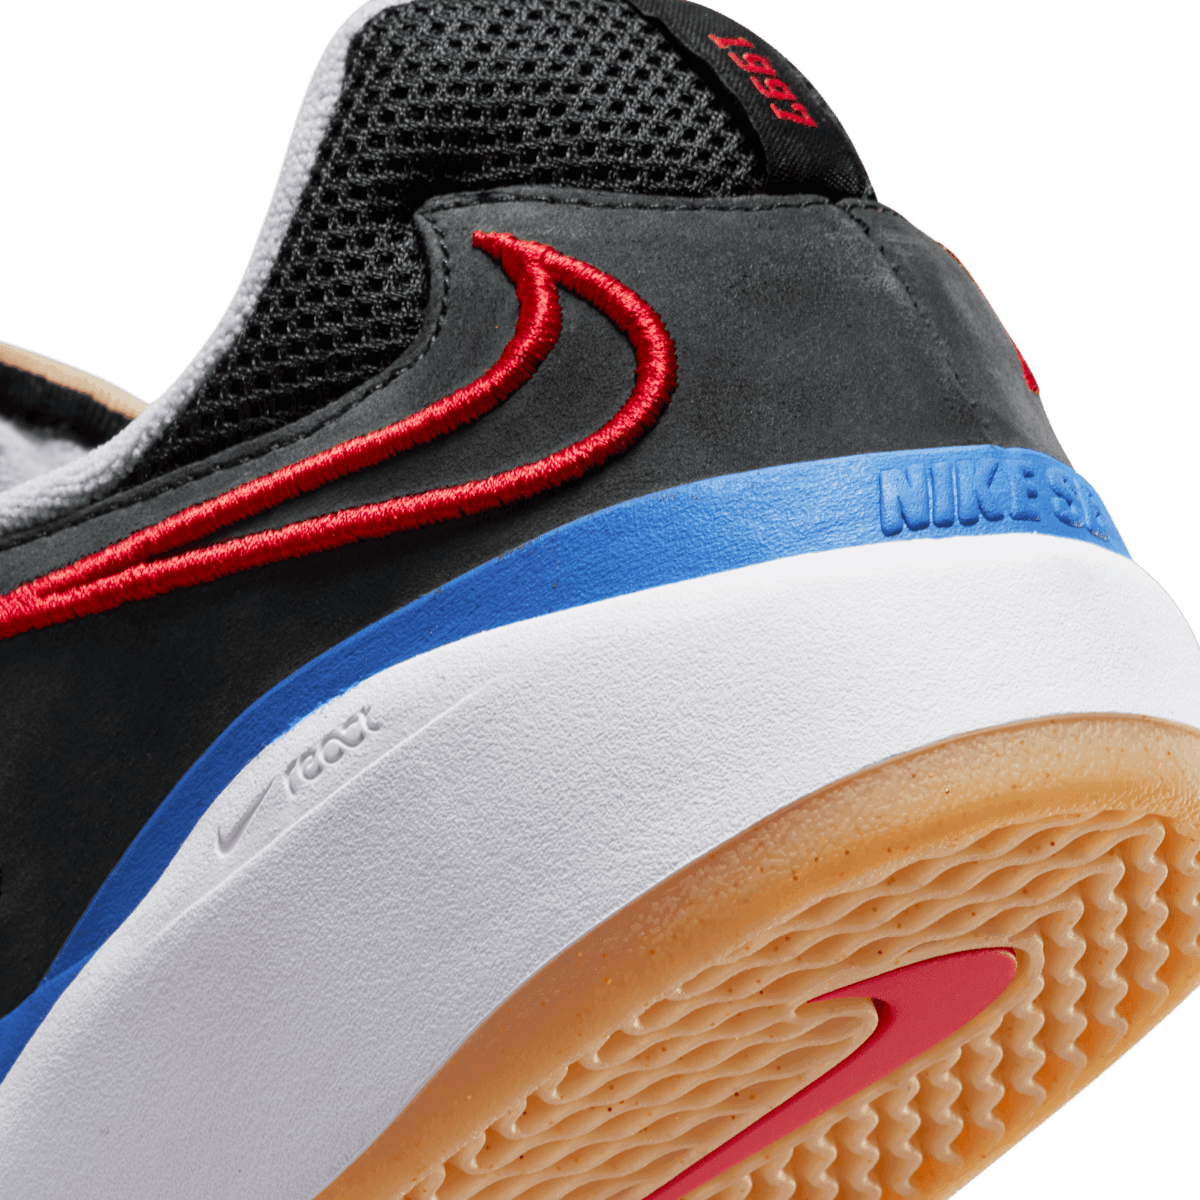 Nike SB Ishod Wair NBA Angle 5